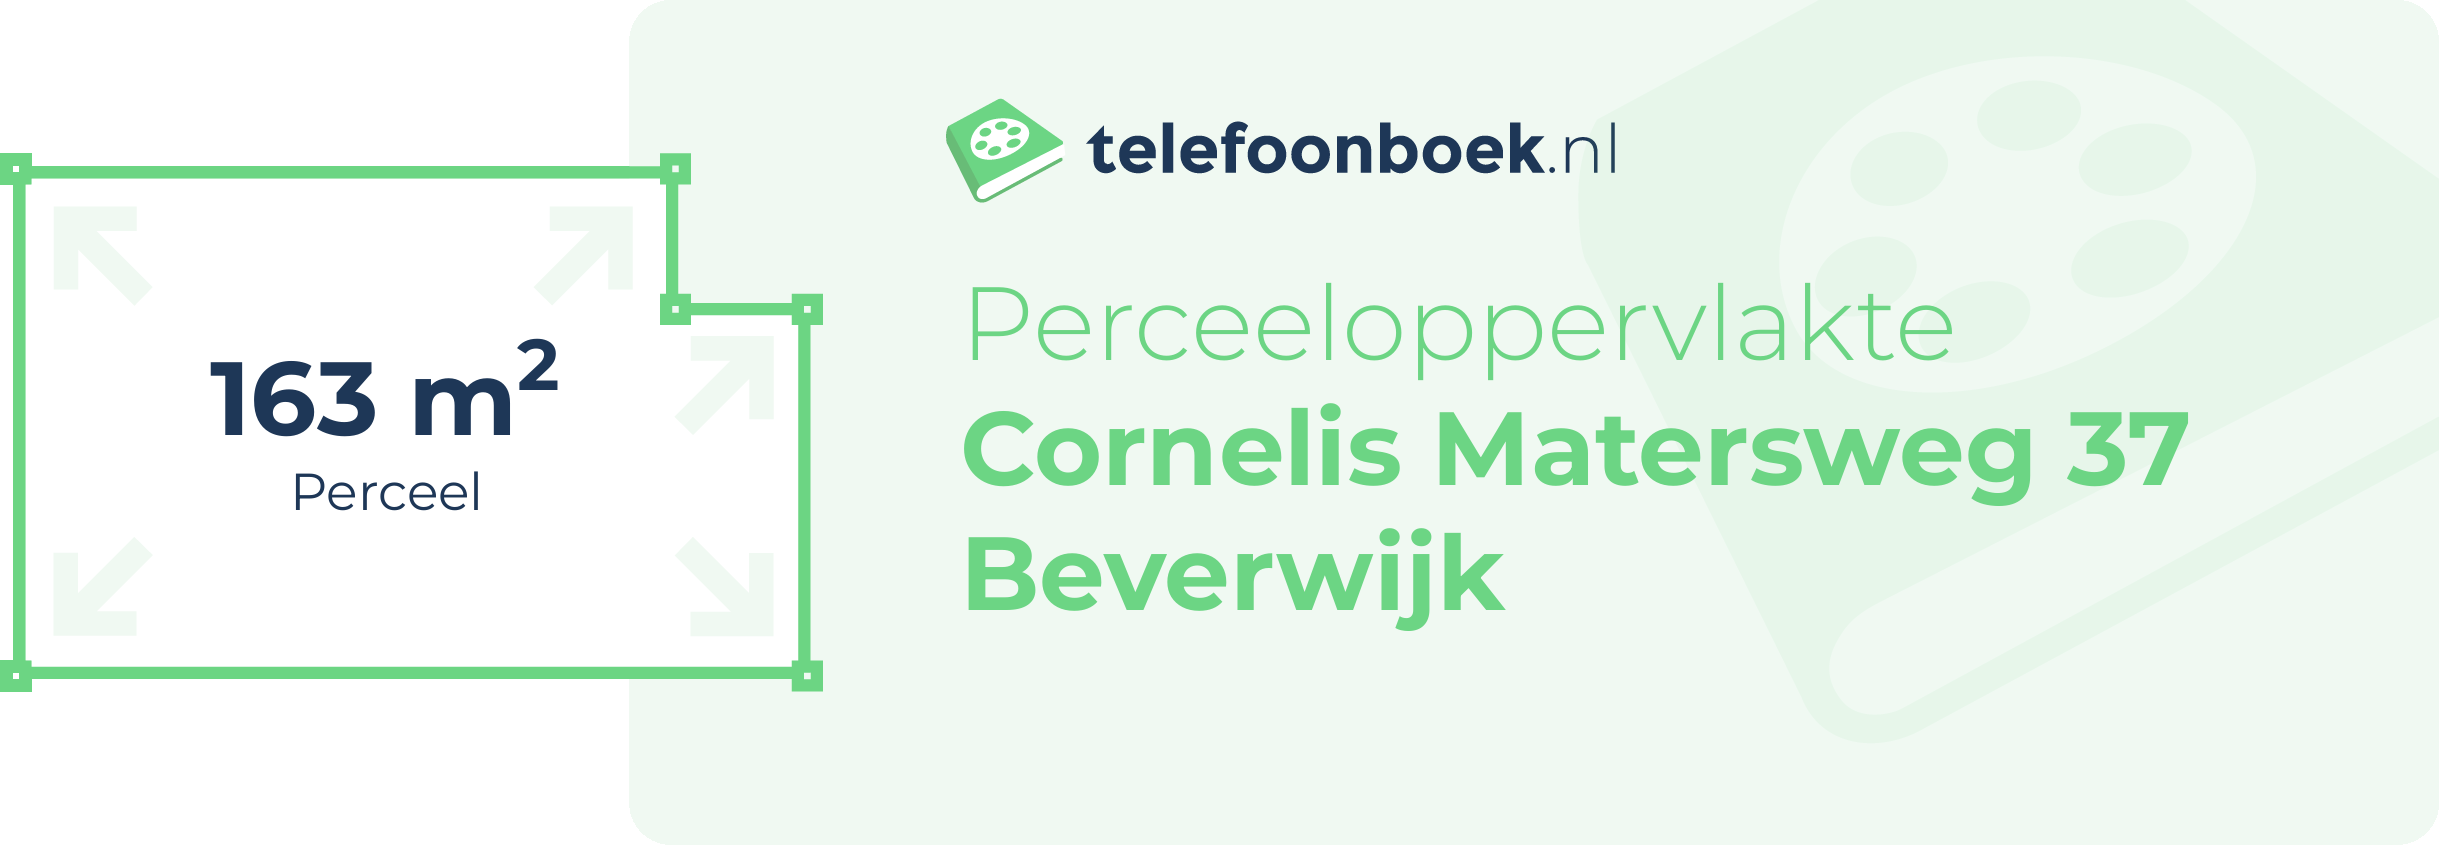 Perceeloppervlakte Cornelis Matersweg 37 Beverwijk